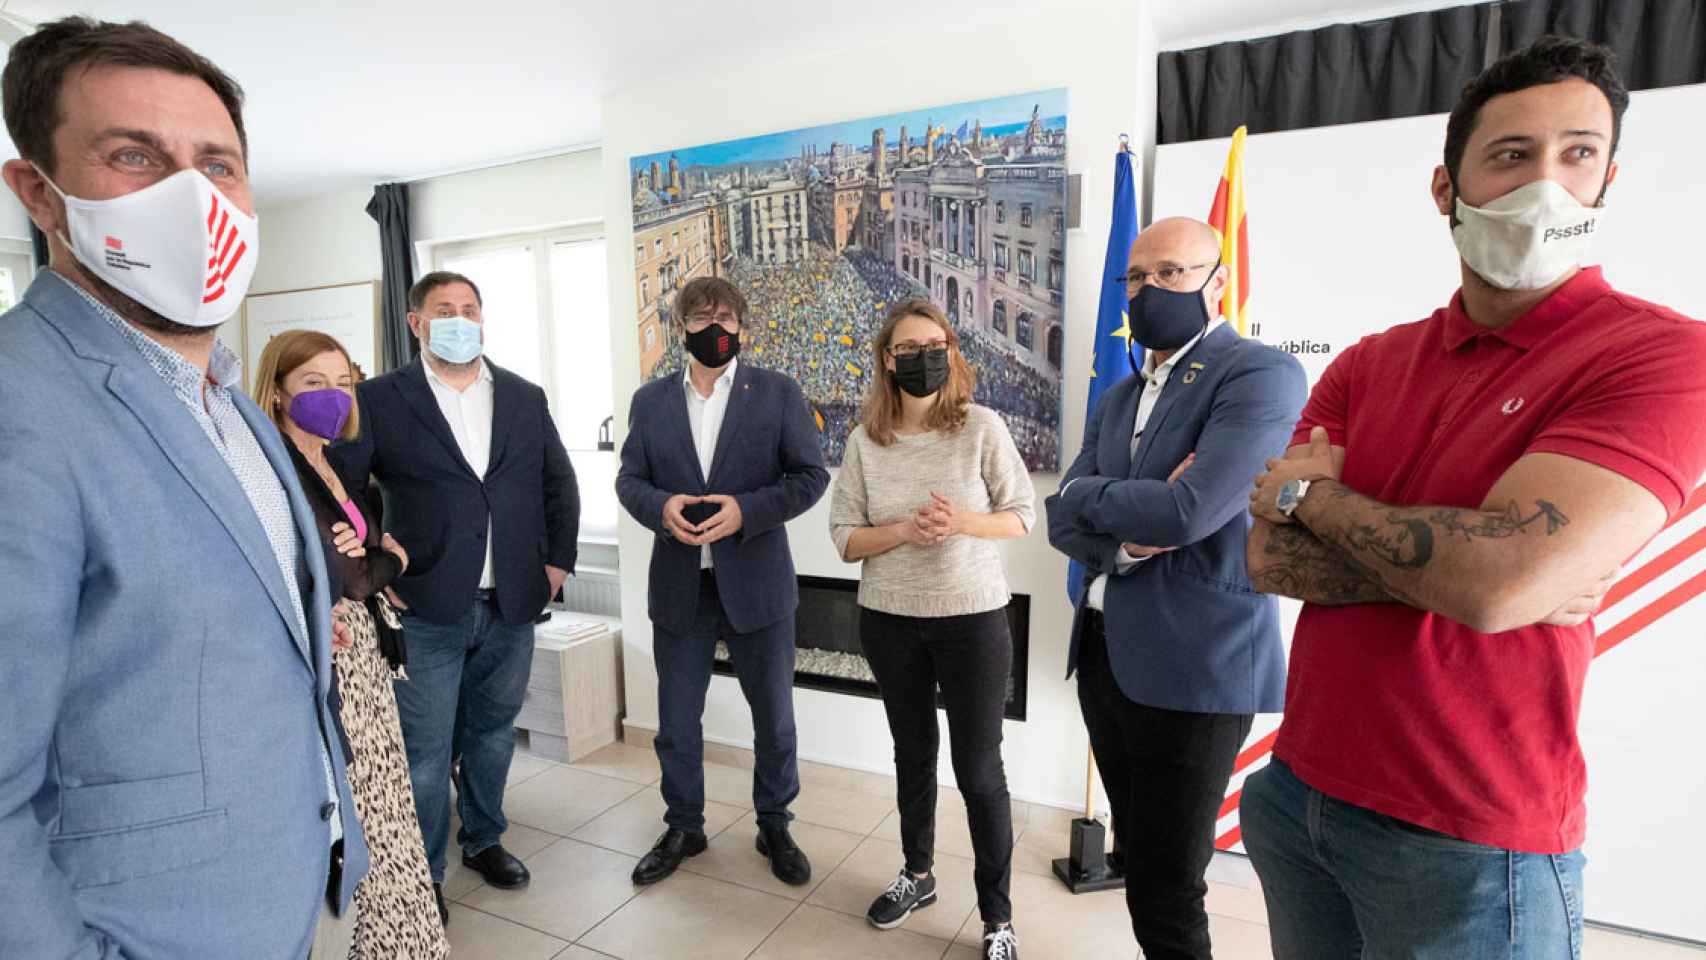 Valtònyc (d), de rojo, con el 'expresident' fugado Carles Puigdemont y otros 'consellers' huidos / EP